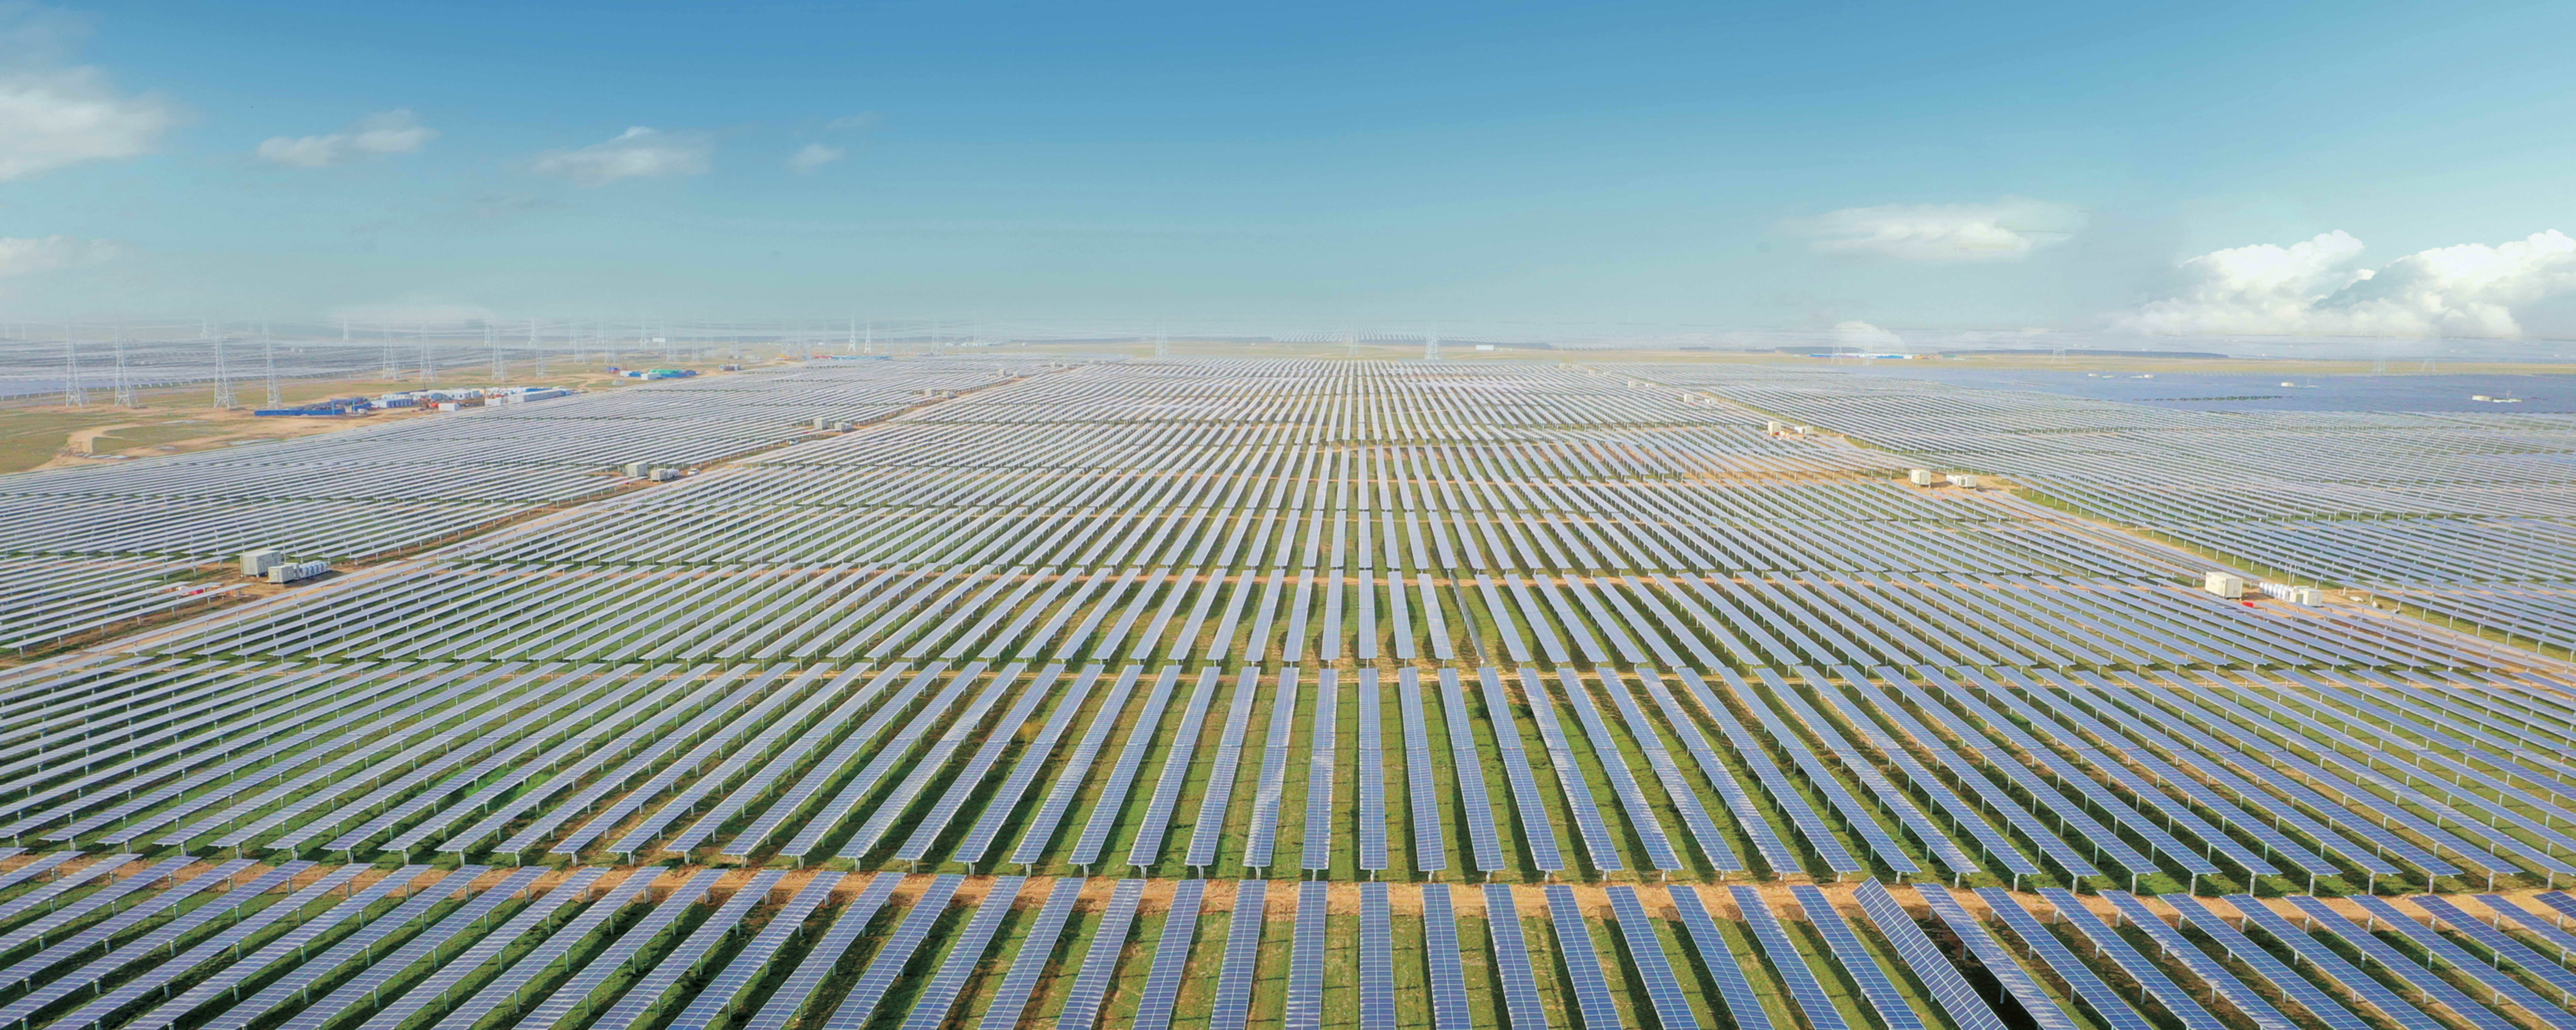 Indústria fotovoltaica chinesa: país poderá incorporar mais de 150 GW de capacidade fotovoltaica em 2023